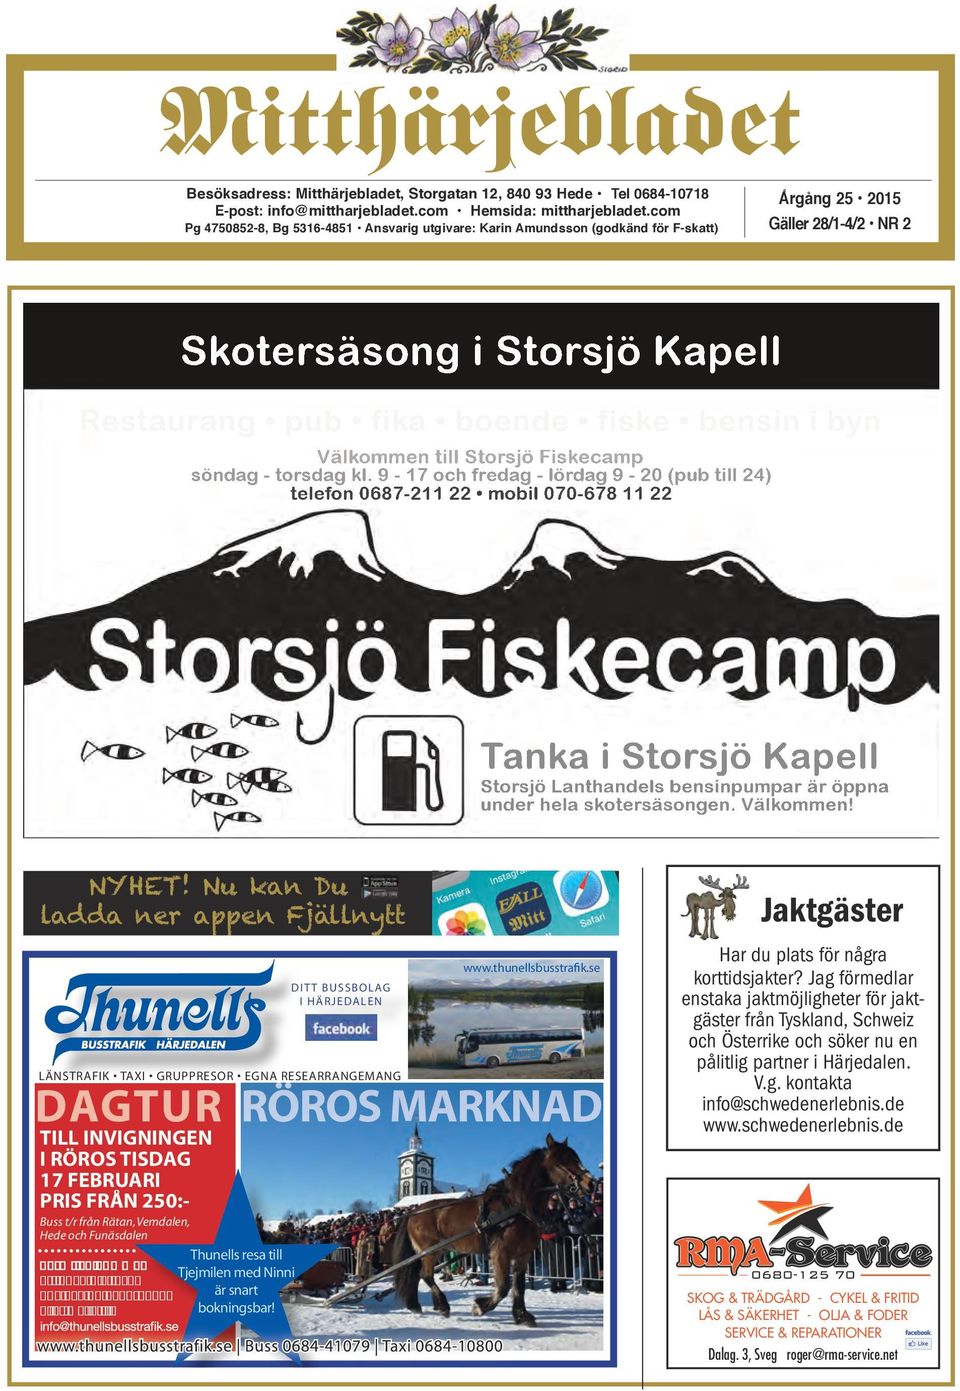 Välkommen till Storsjö Fiskecamp söndag - torsdag kl. 9-17 och fredag - lördag 9-20 (pub till 24) telefon 0687-211 22 mobil 070-678 11 22 NYHET!